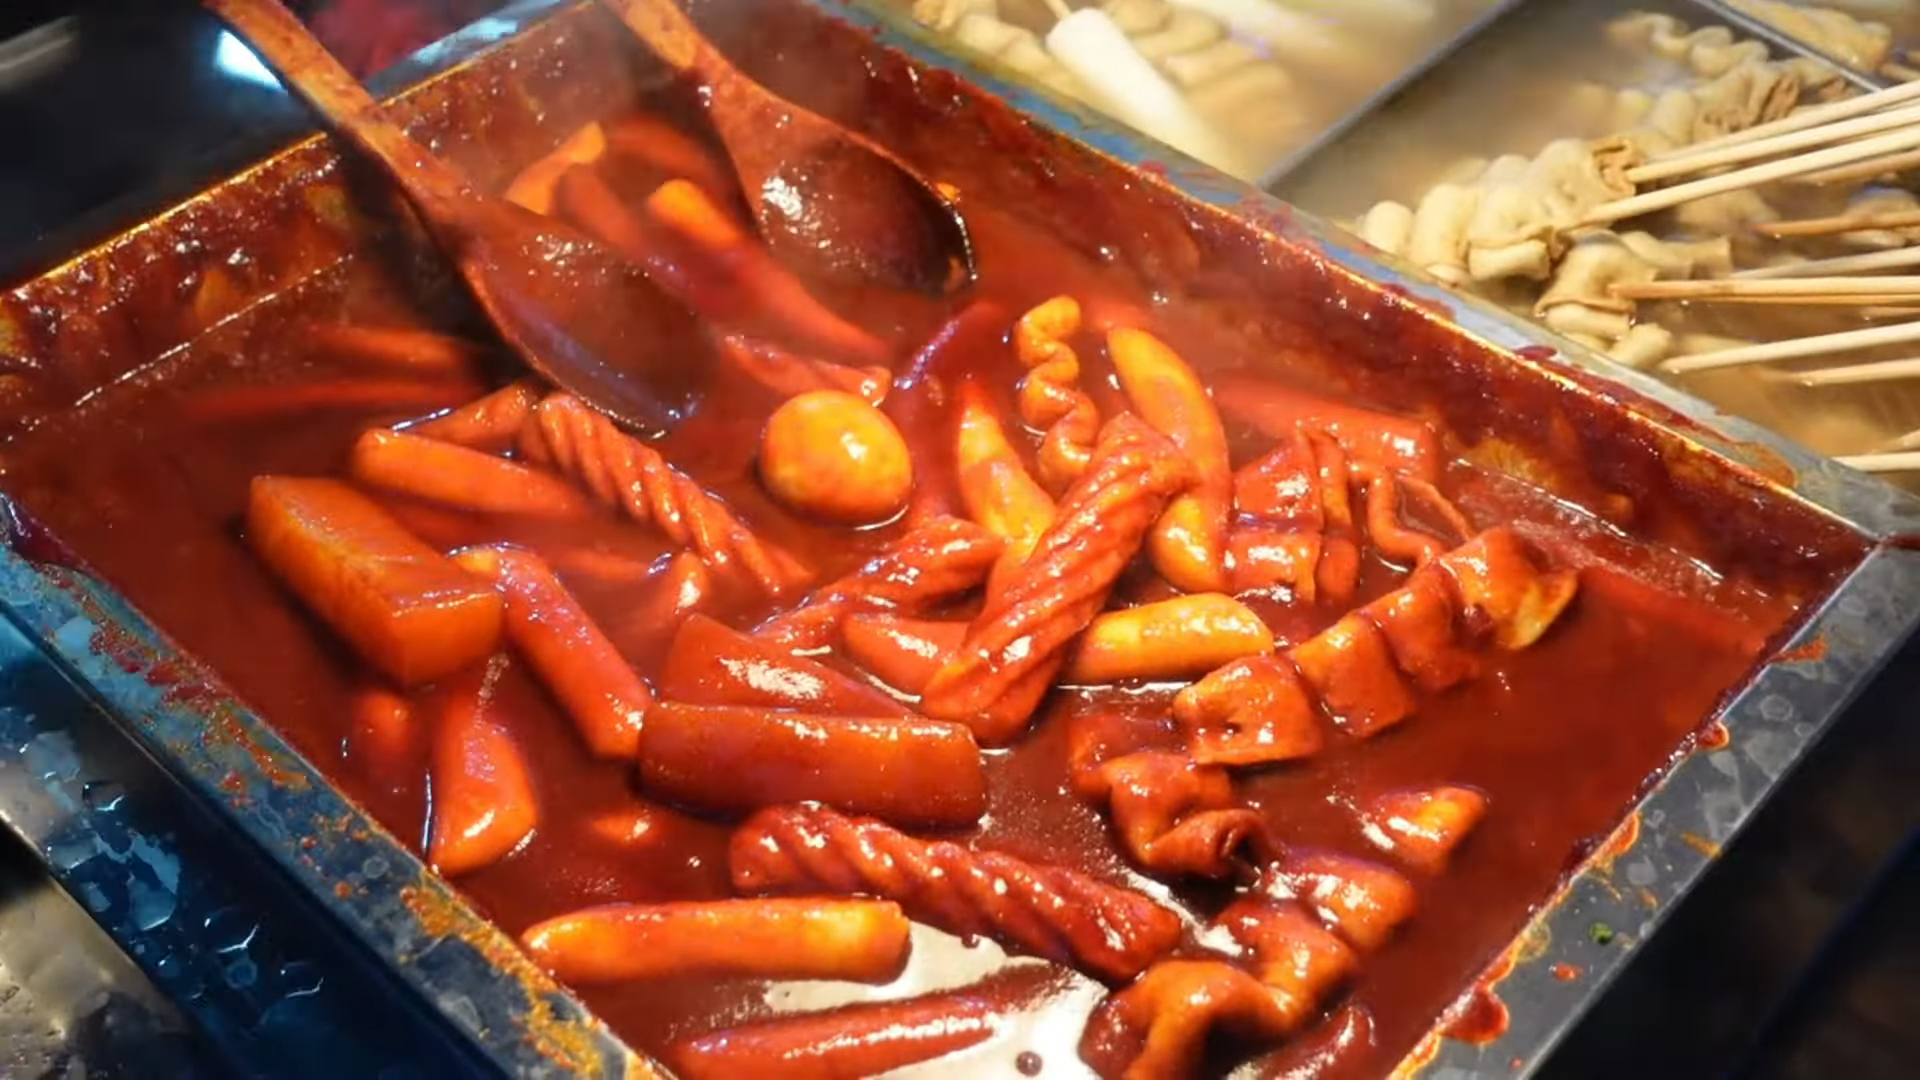 부산서면분식맛집(떡볶이,오뎅,야끼만두,전)_popular snacks in korean market _ Korean street food 2-7 screenshot.png